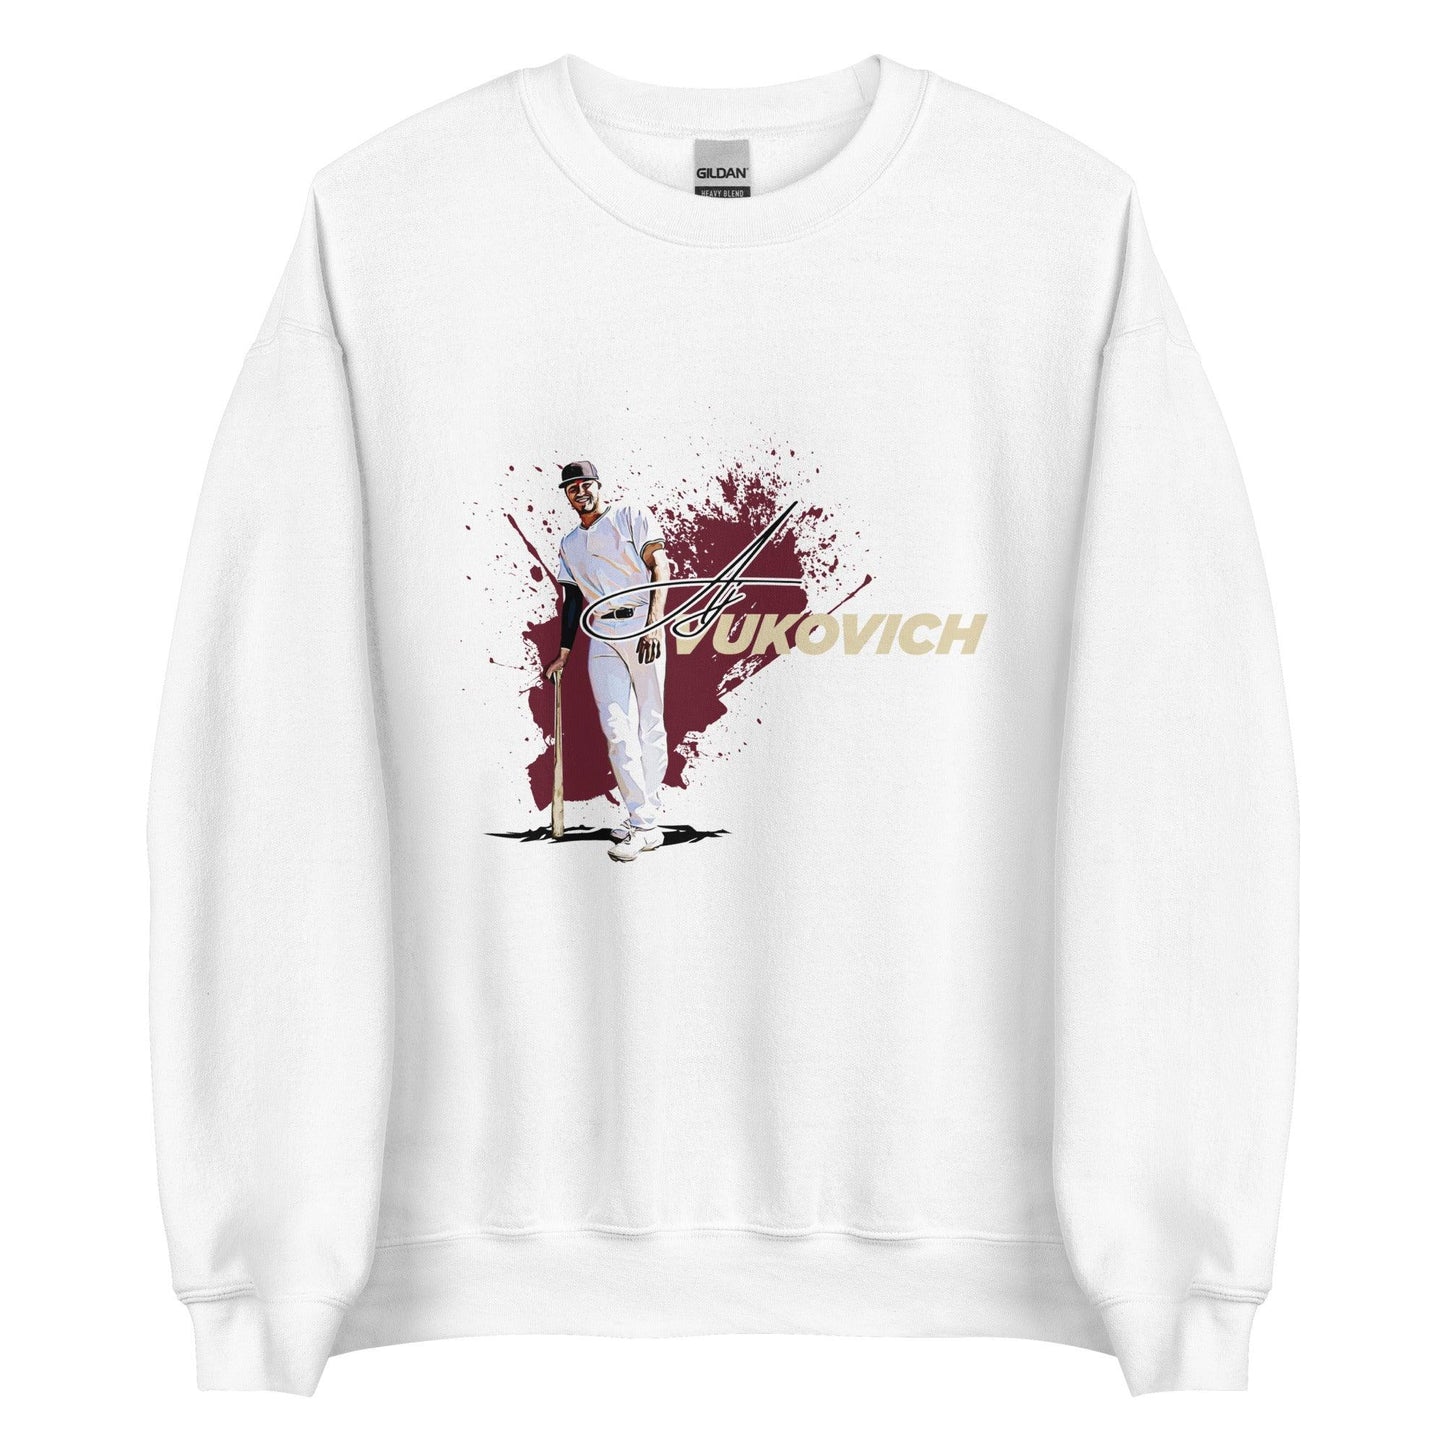 AJ Vukovich “Primetime” Sweatshirt - Fan Arch